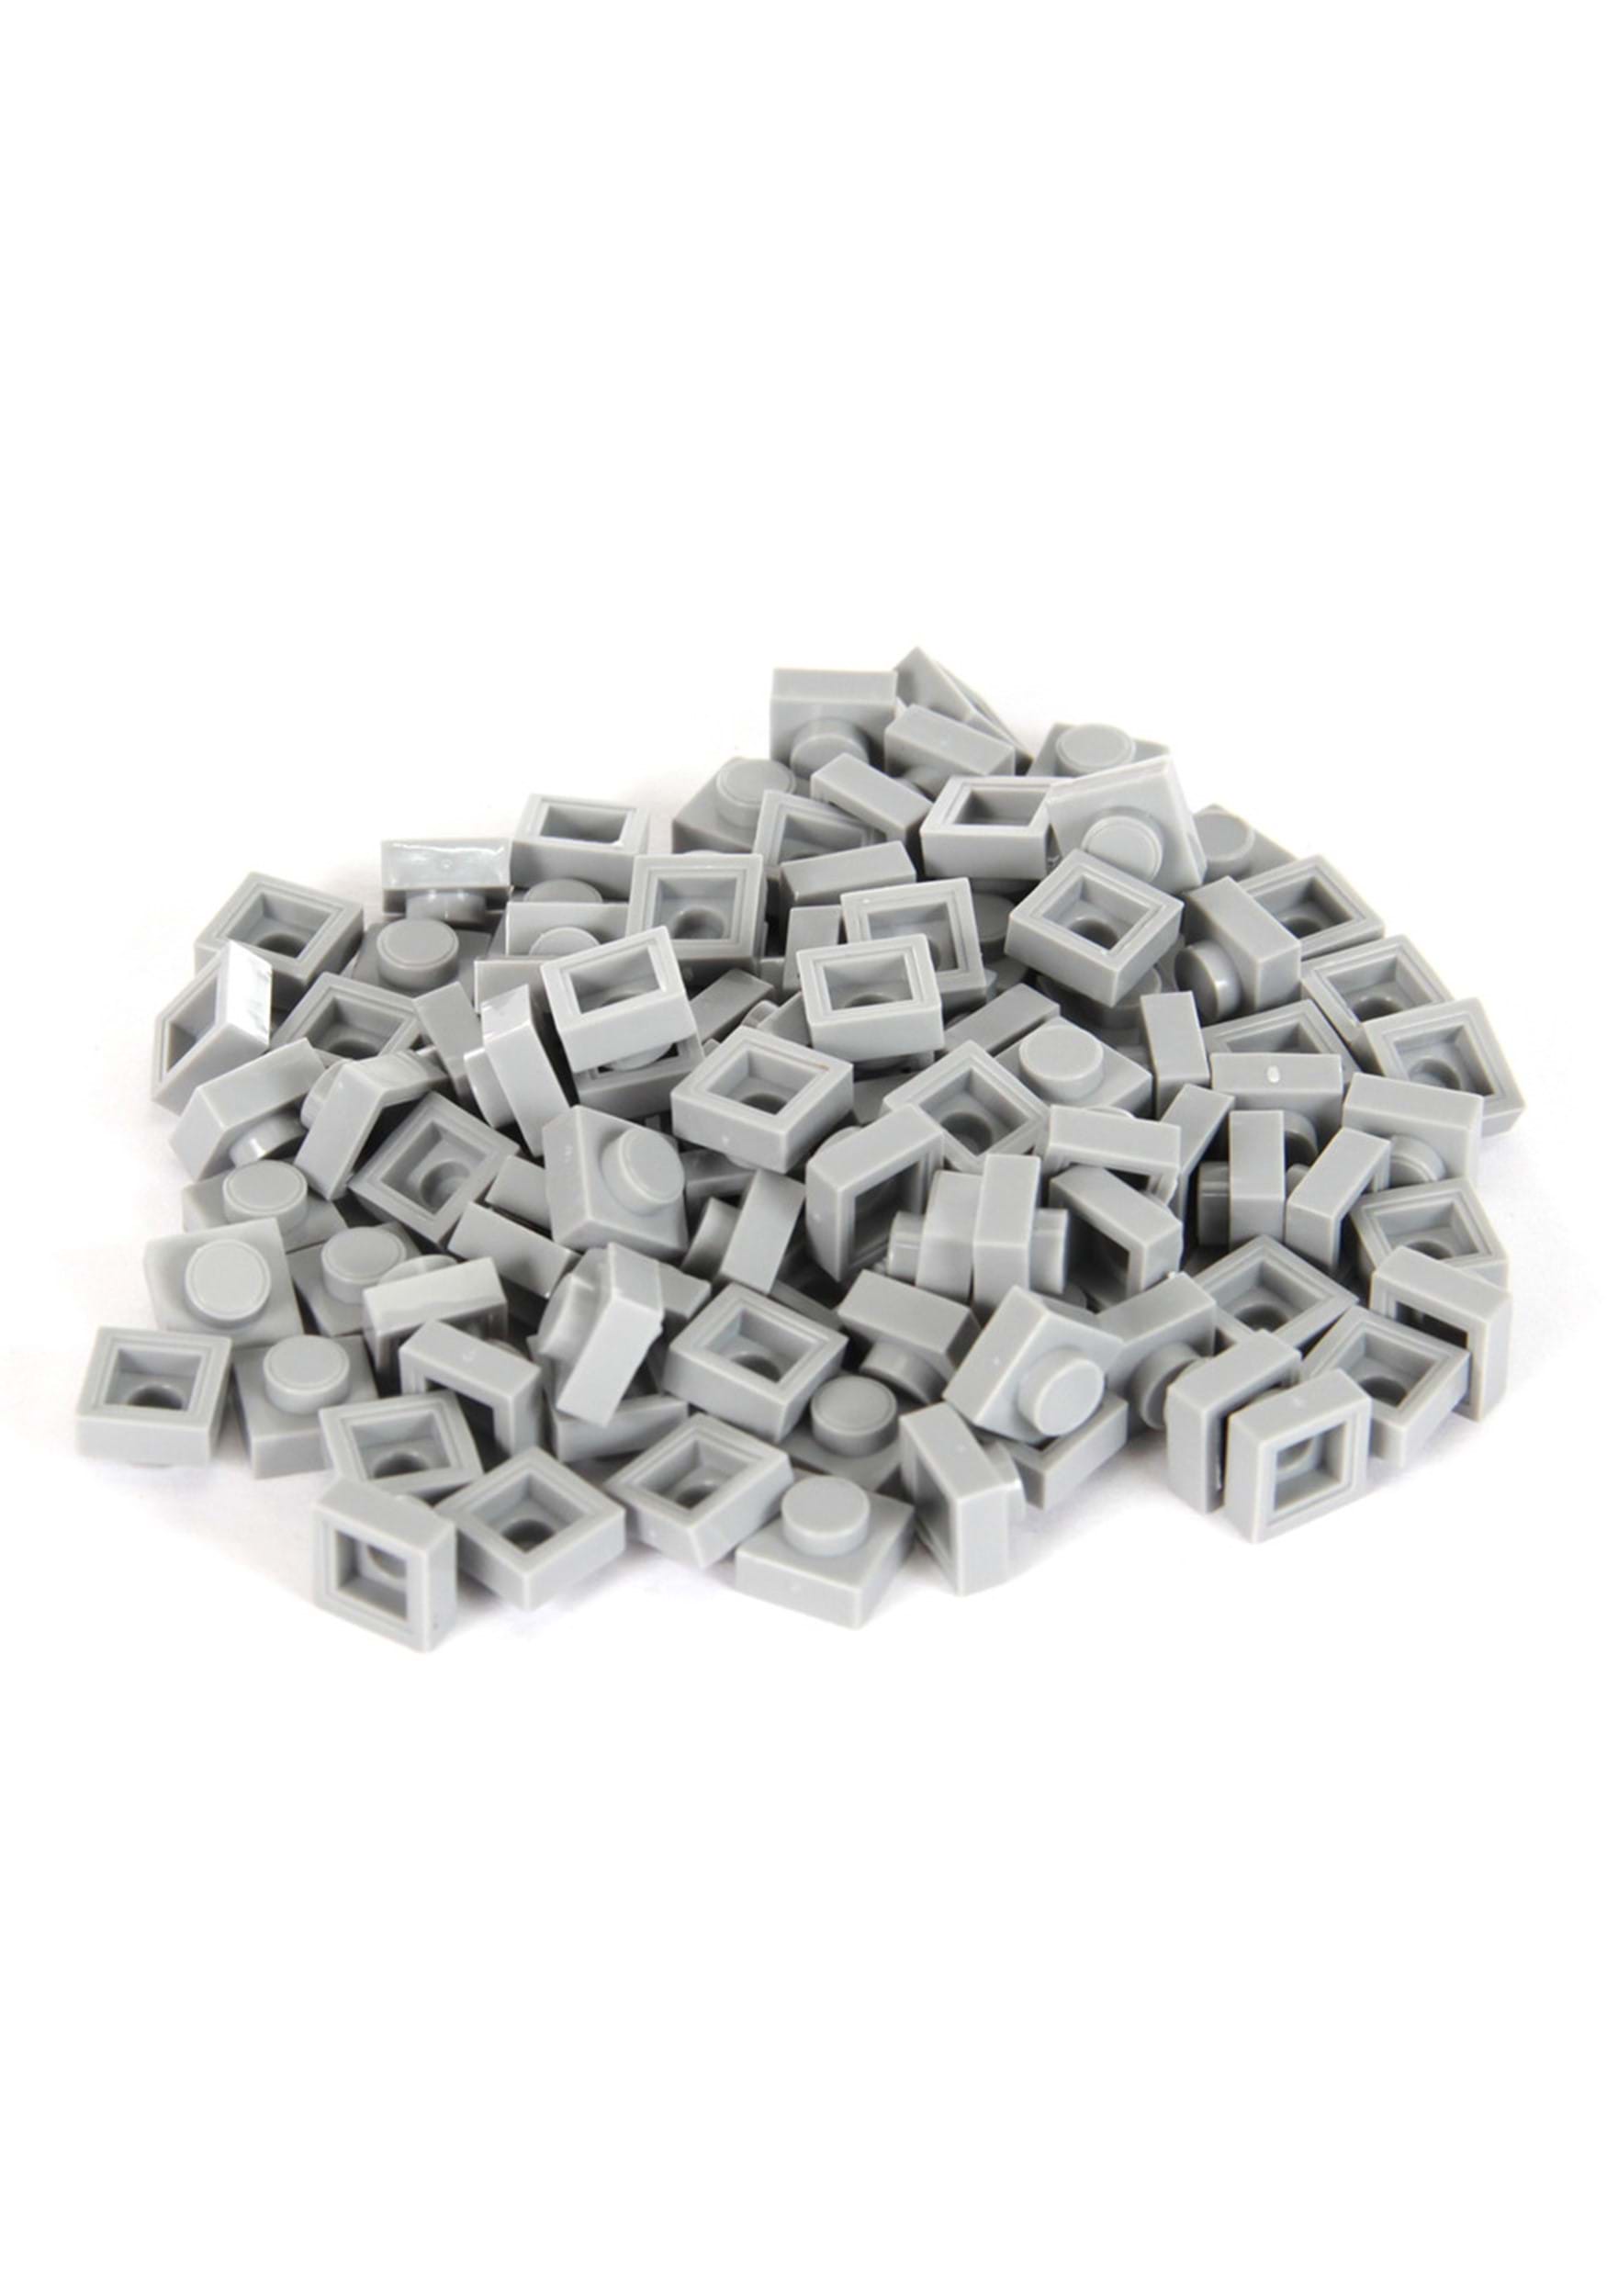 Bricky Blocks 100 Pieces 1×1 Gray